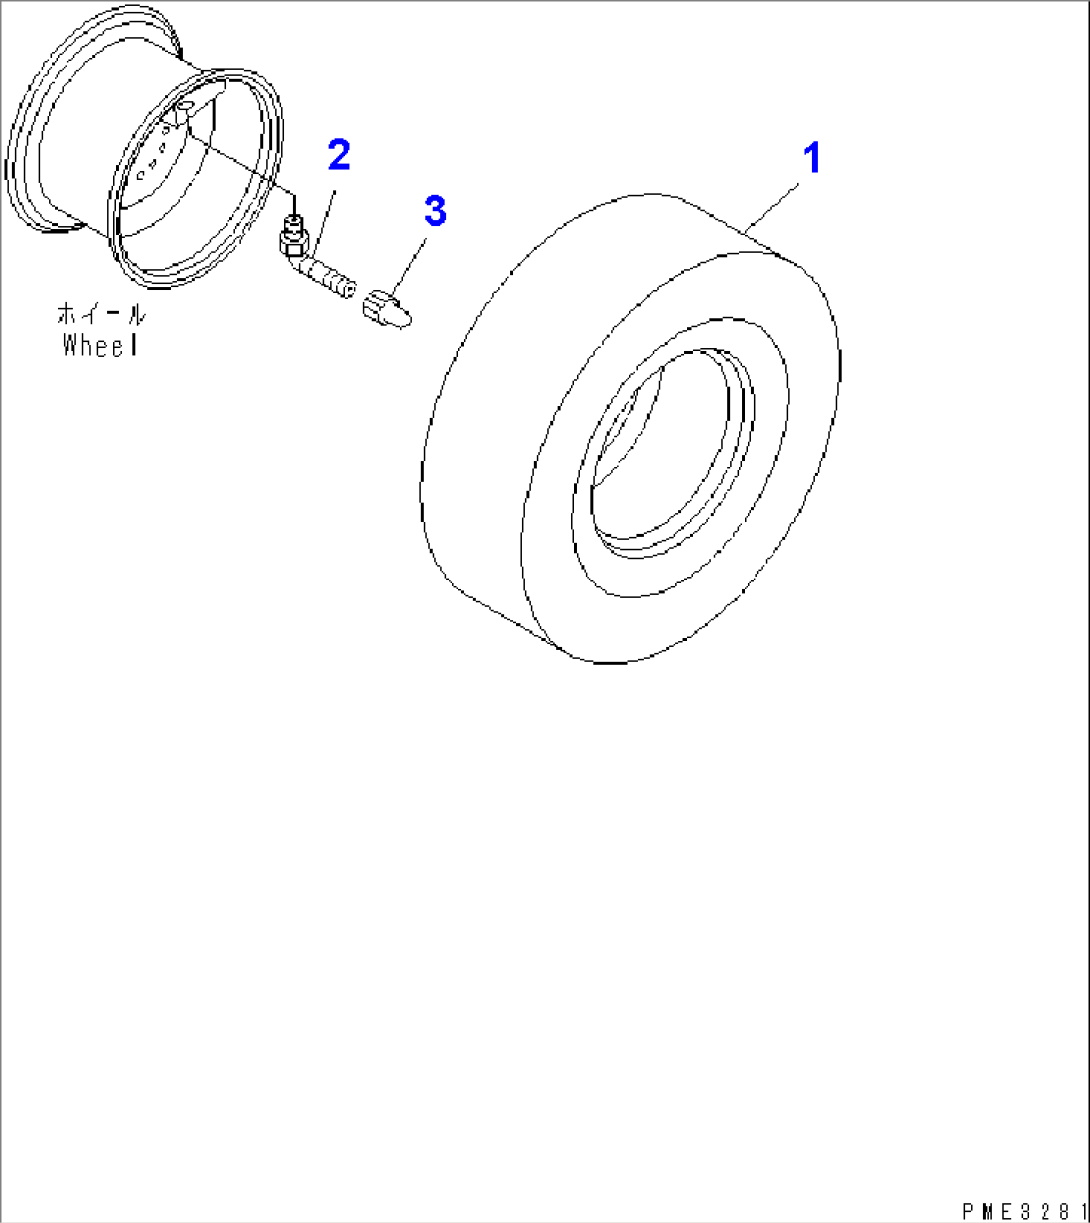 TIRE (16.9-24-10PR-L2 TUBELESS TIRE) (TOYO)